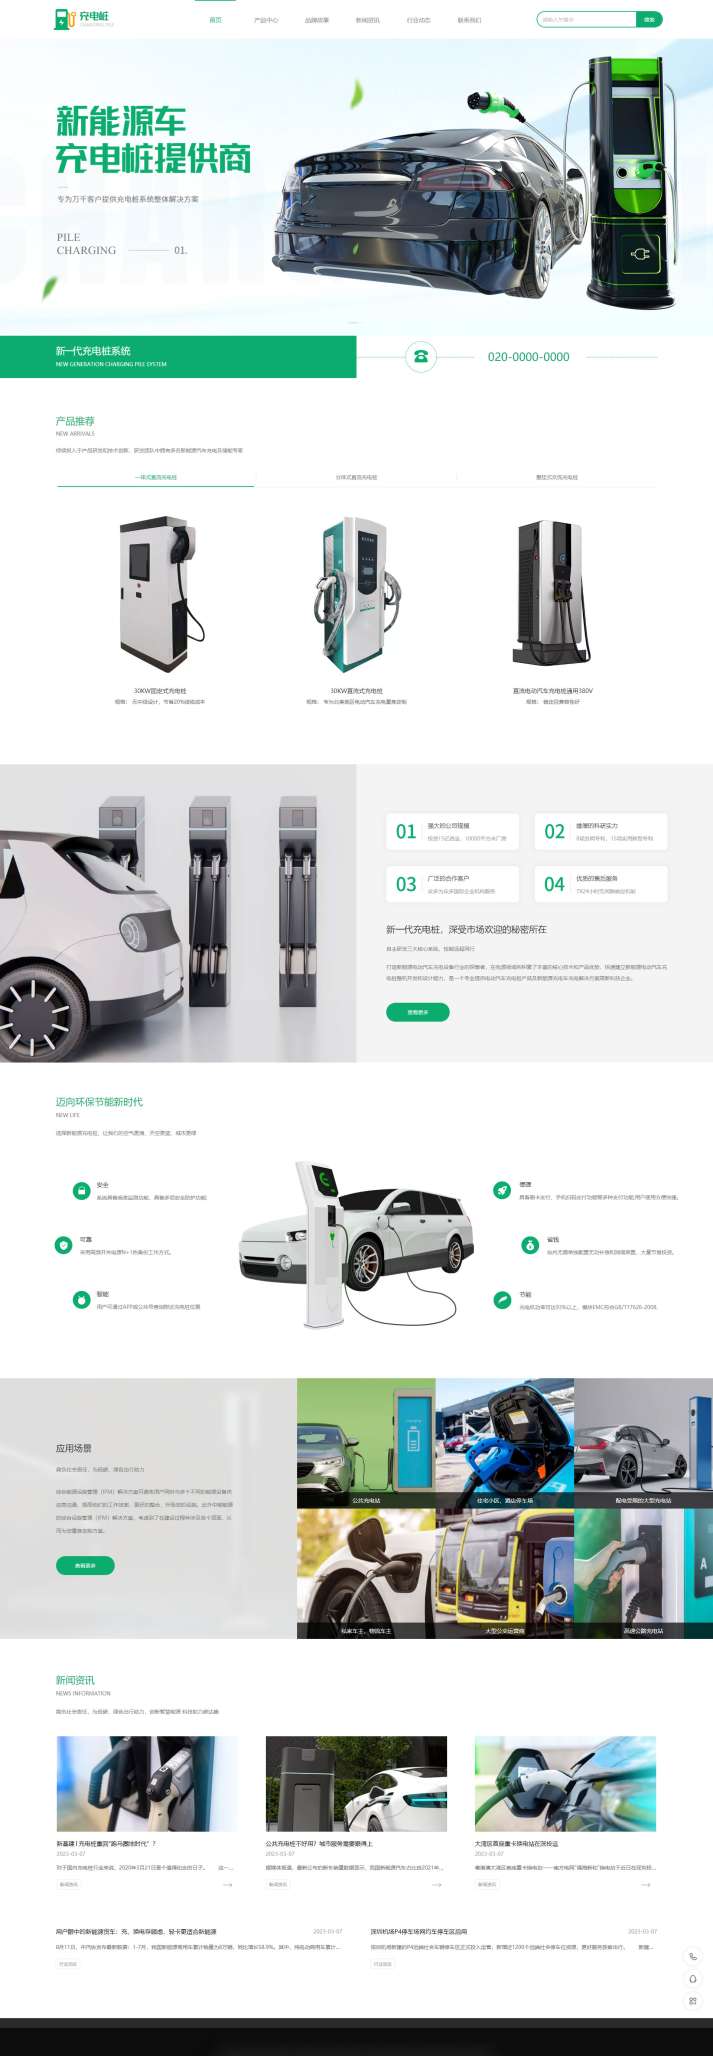 专业汽车充电桩设备企业网站模板